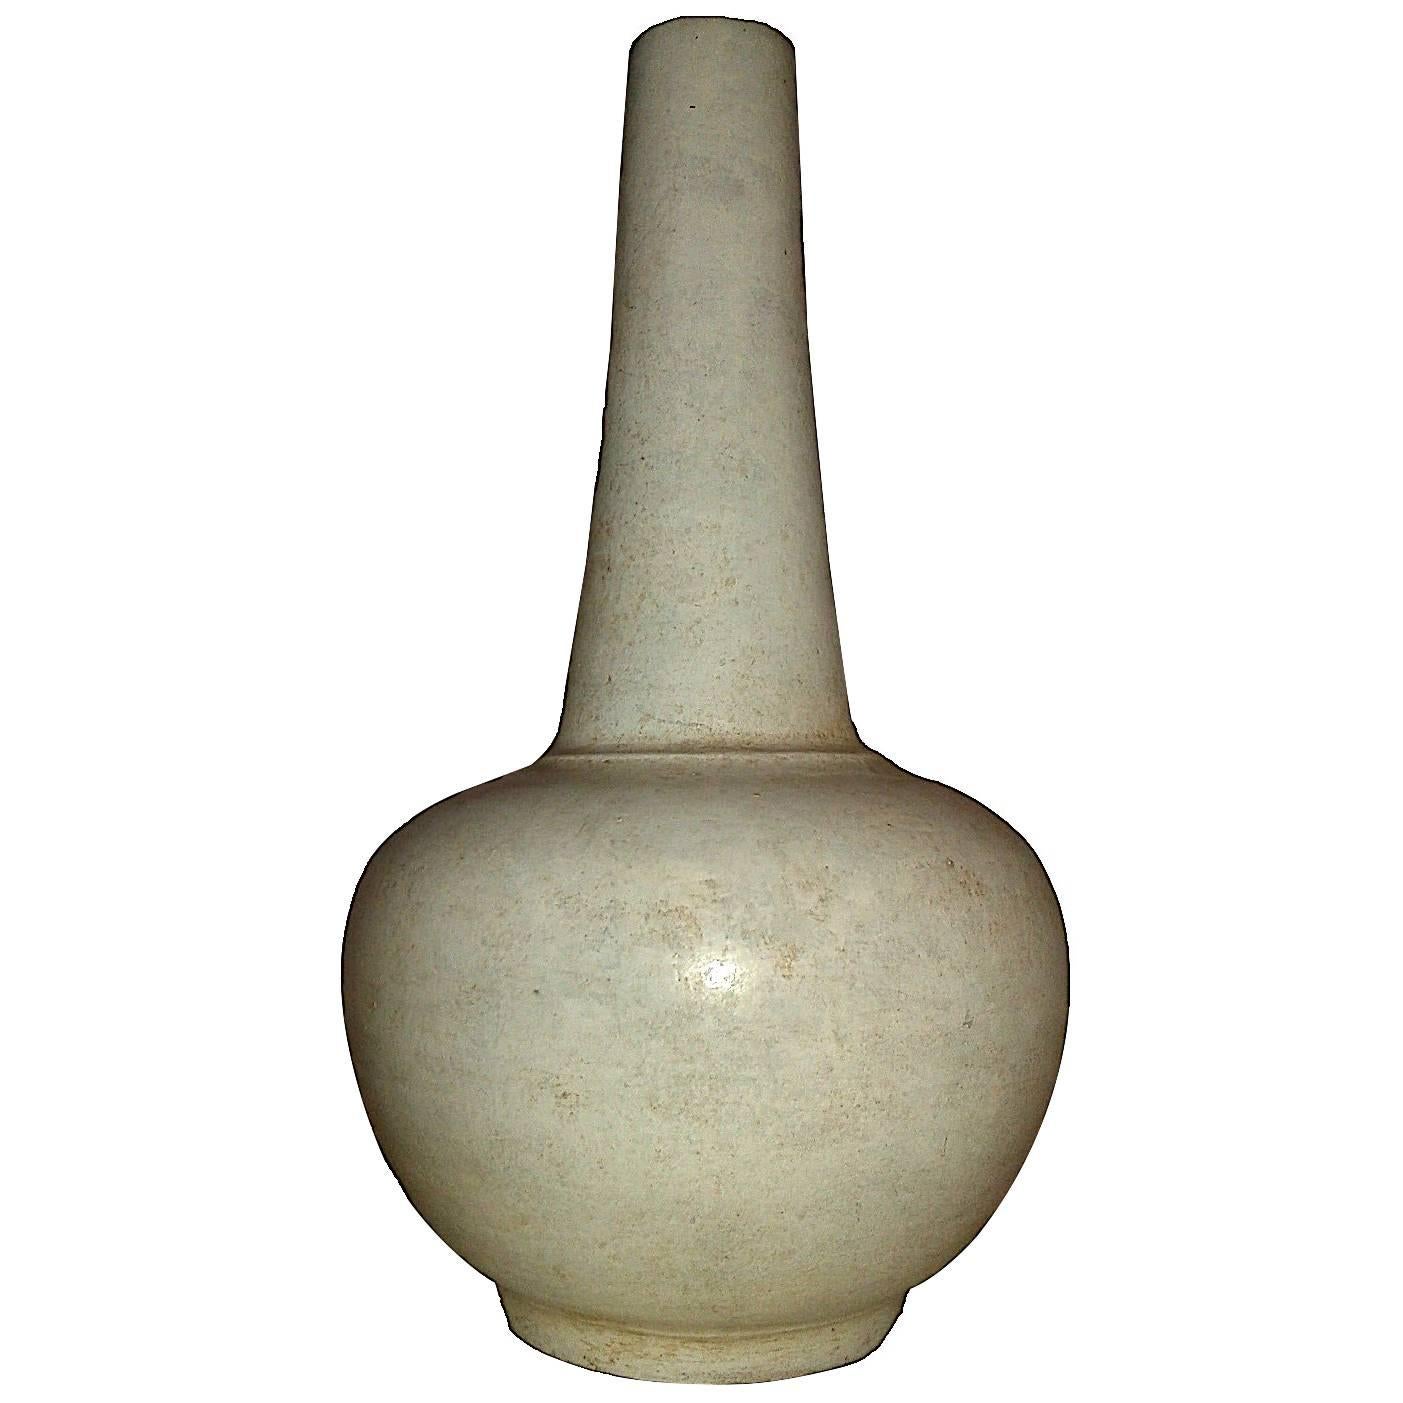 Ceramic Vase with White Glaze and Long Neck